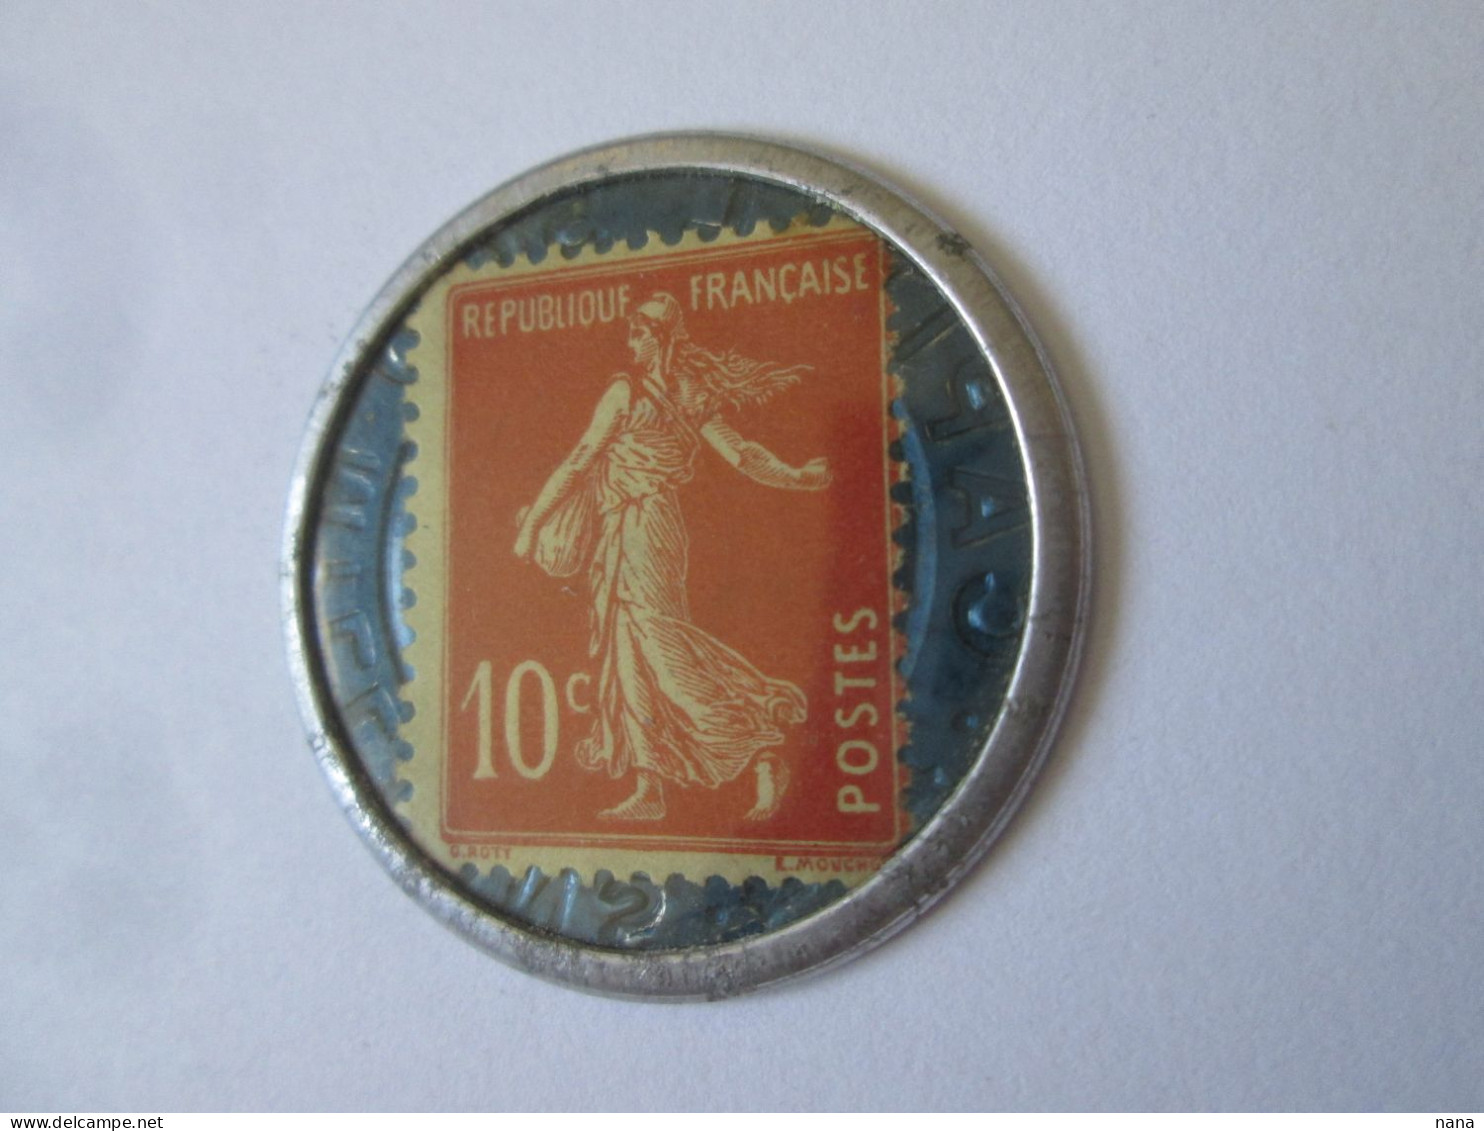 France:Timbre Monnaie 10 Centimes Societe Generale Neuf Vers 1920/Societe Generale 10 Centimes UNC Coin Stamp 1920s - Bonos